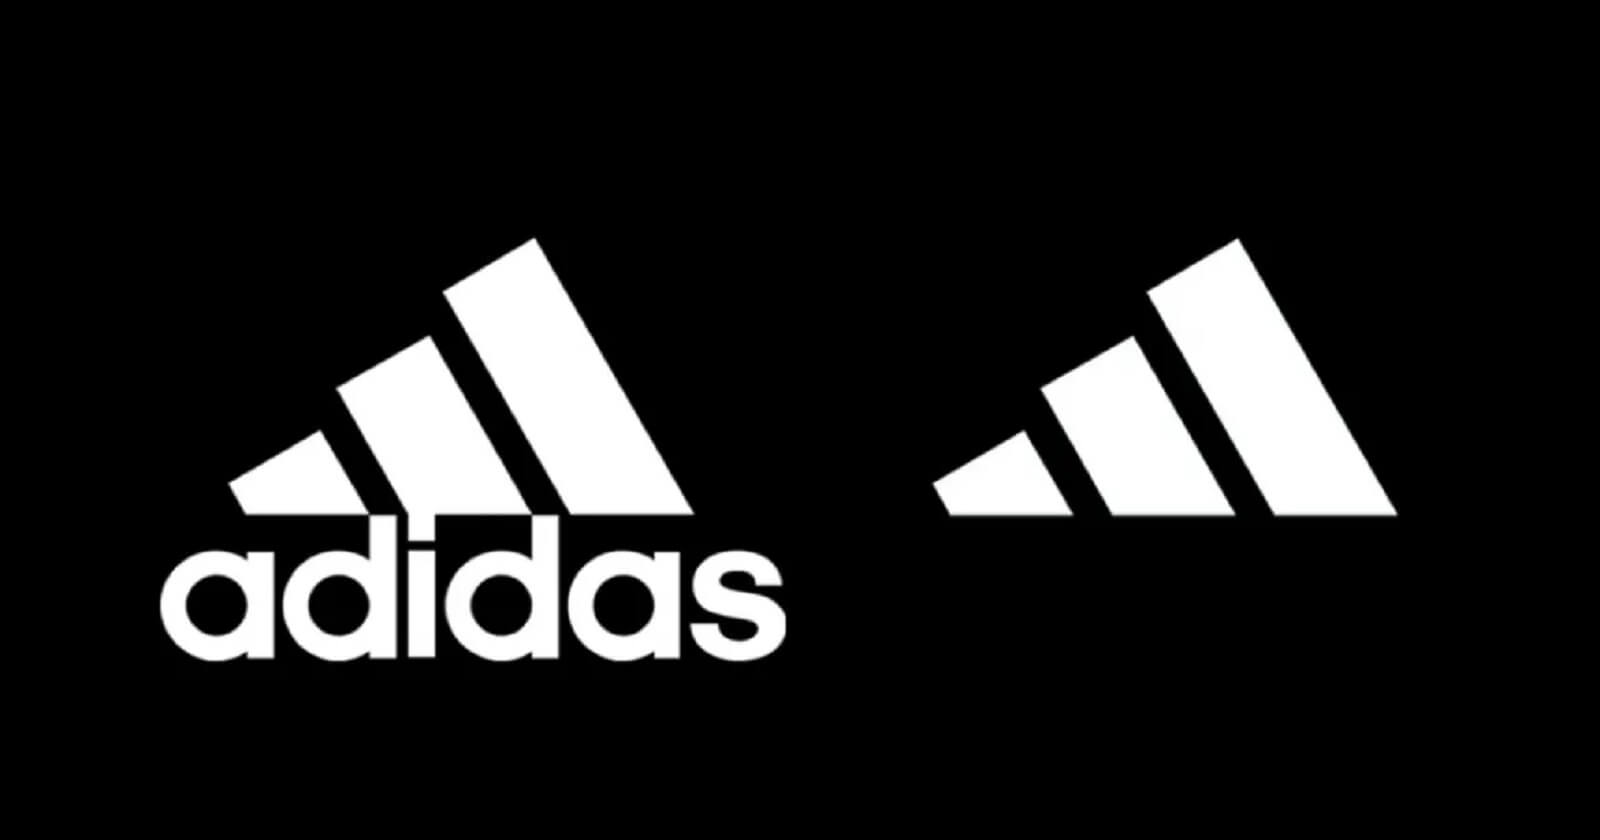 Adidasin Yeni Logosunu Gorenler Sasiriyor Adidas'ın Yeni Logosunu Görenler Şaşırıyor!